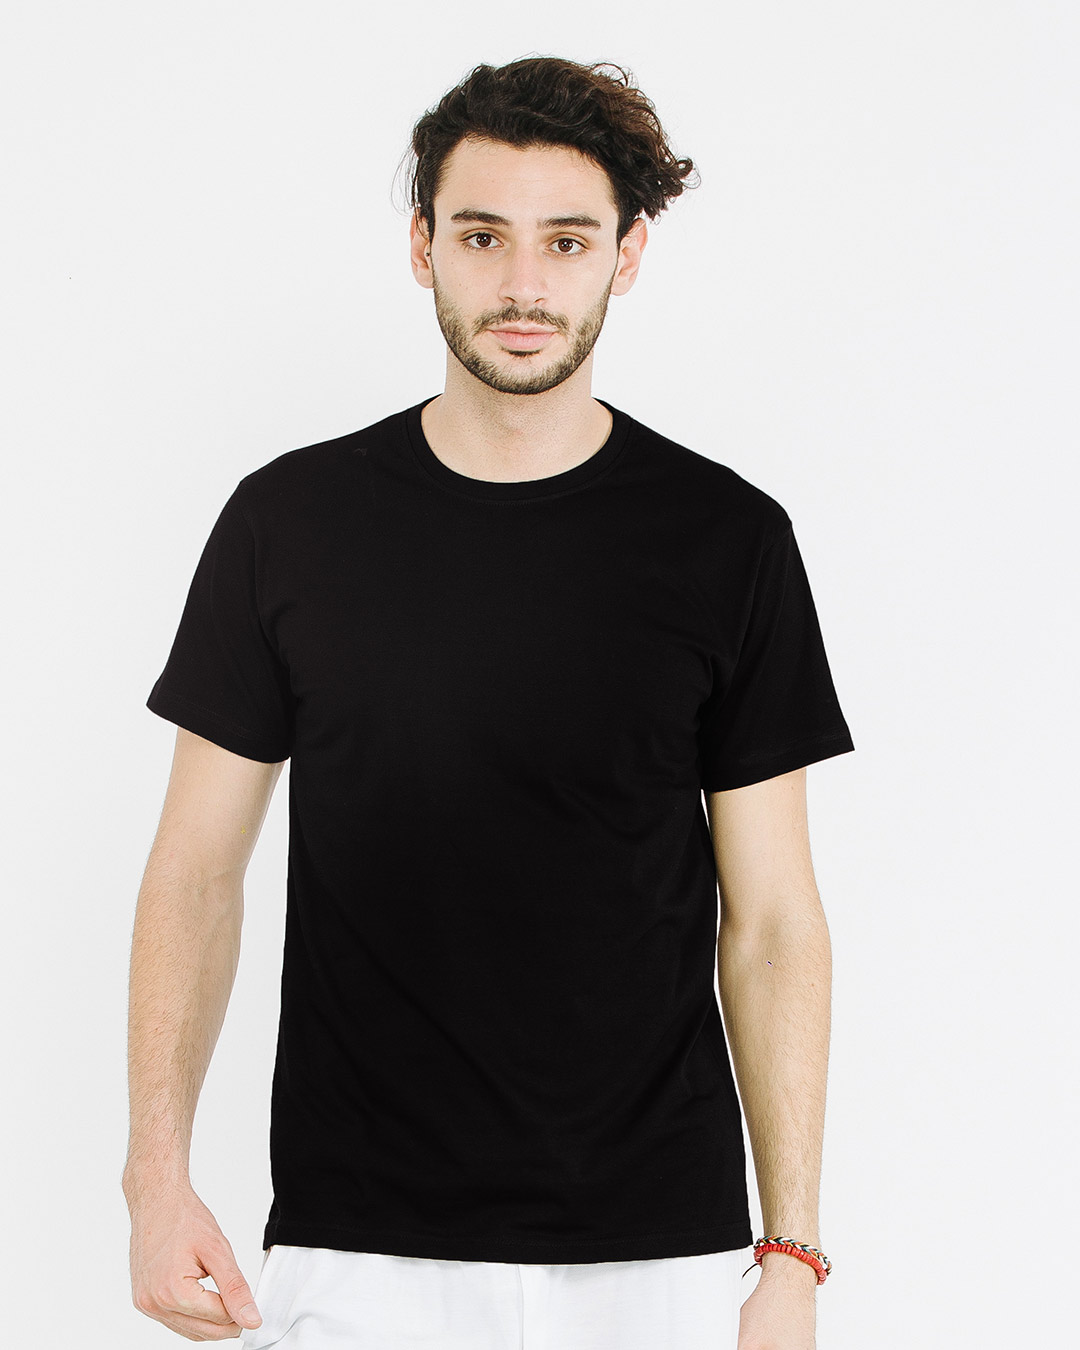 Download Buy Plain black T Shirt online in India at Bewakoof.com